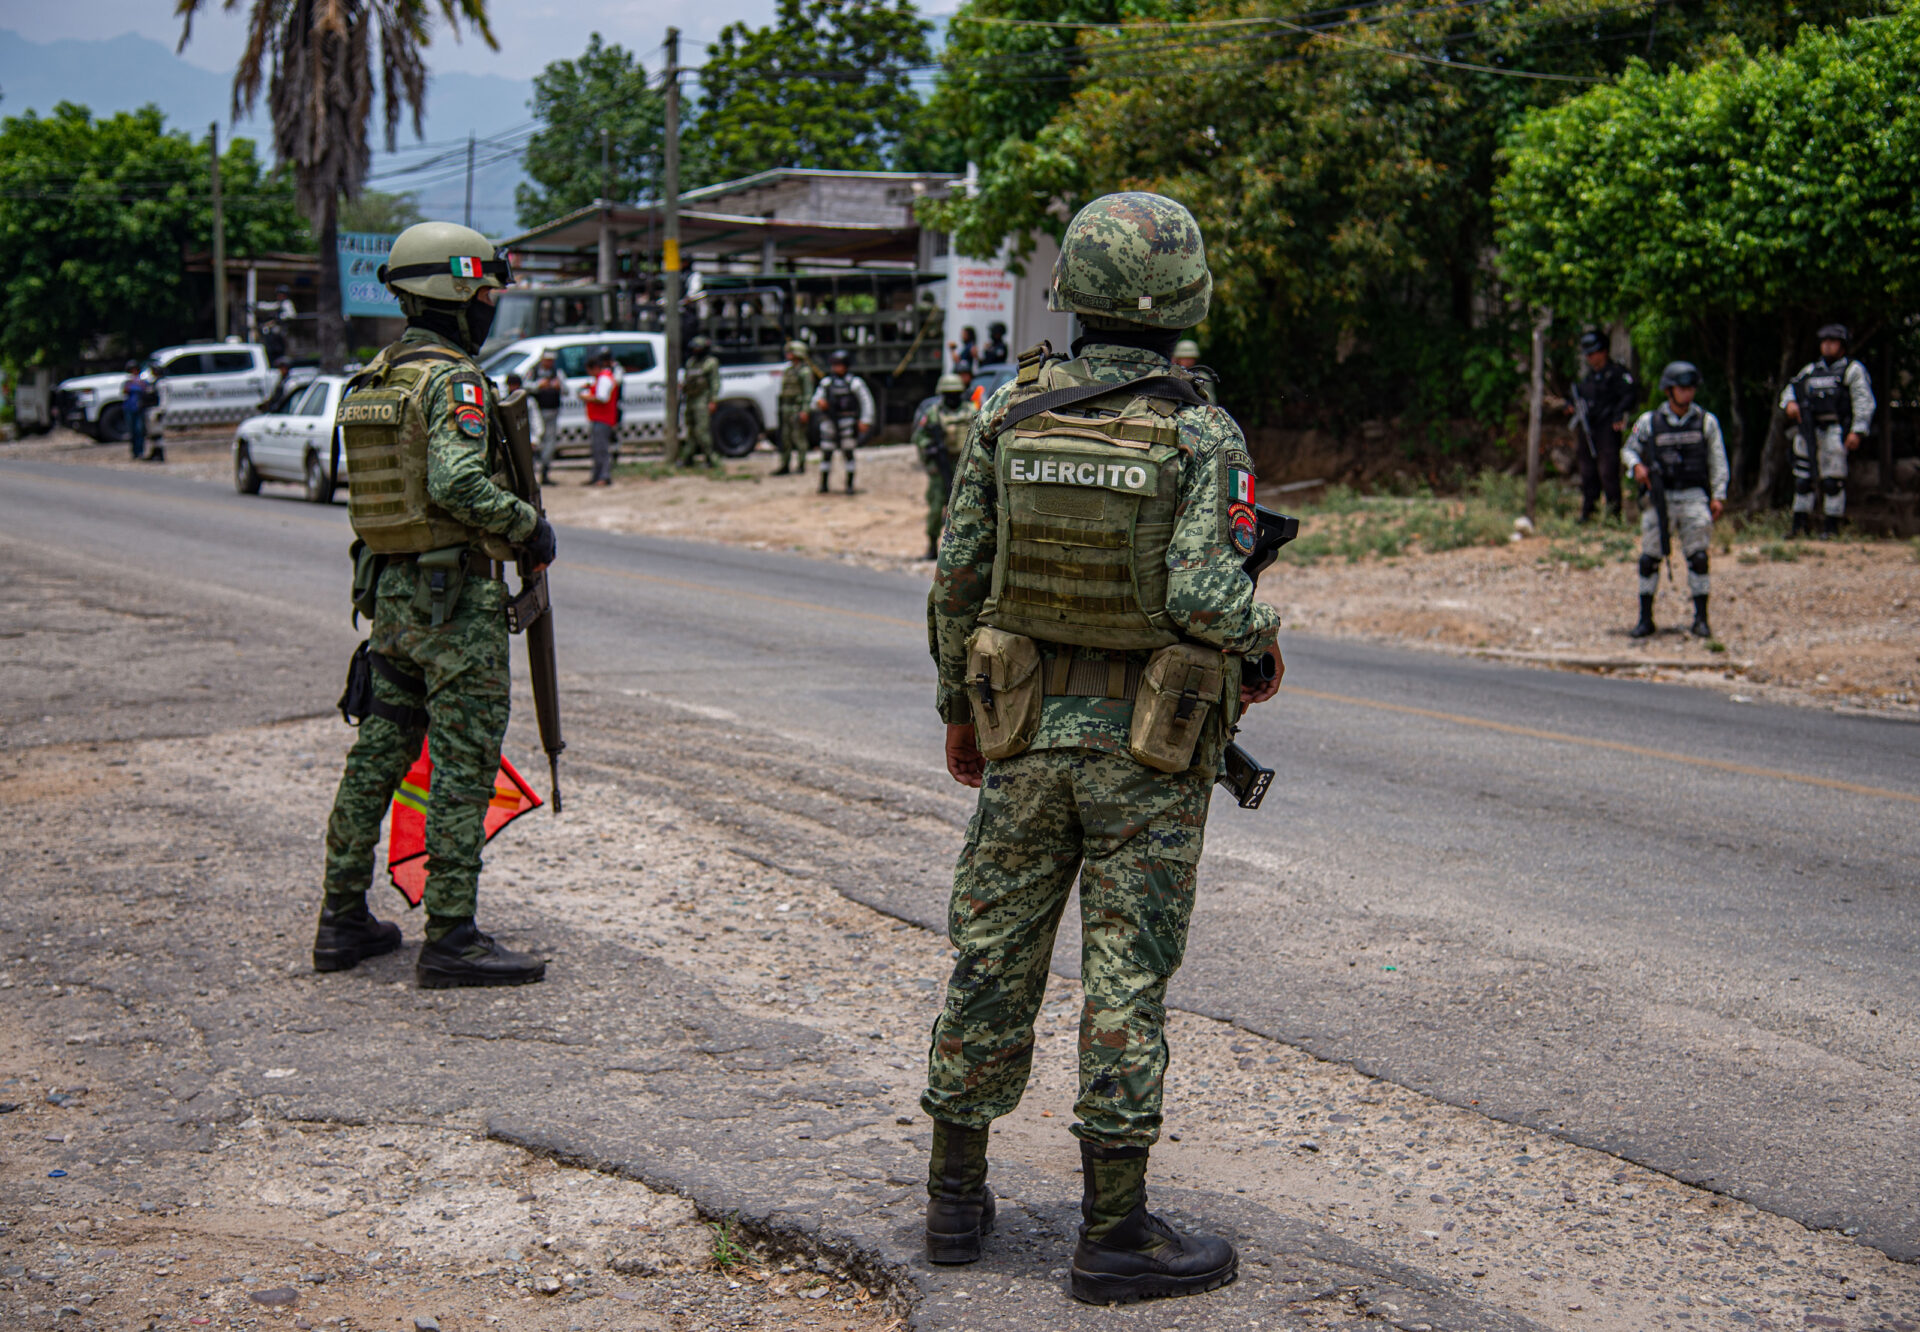 Ejército toma el control de Comalapa, Chiapas, tras enfrentamientos